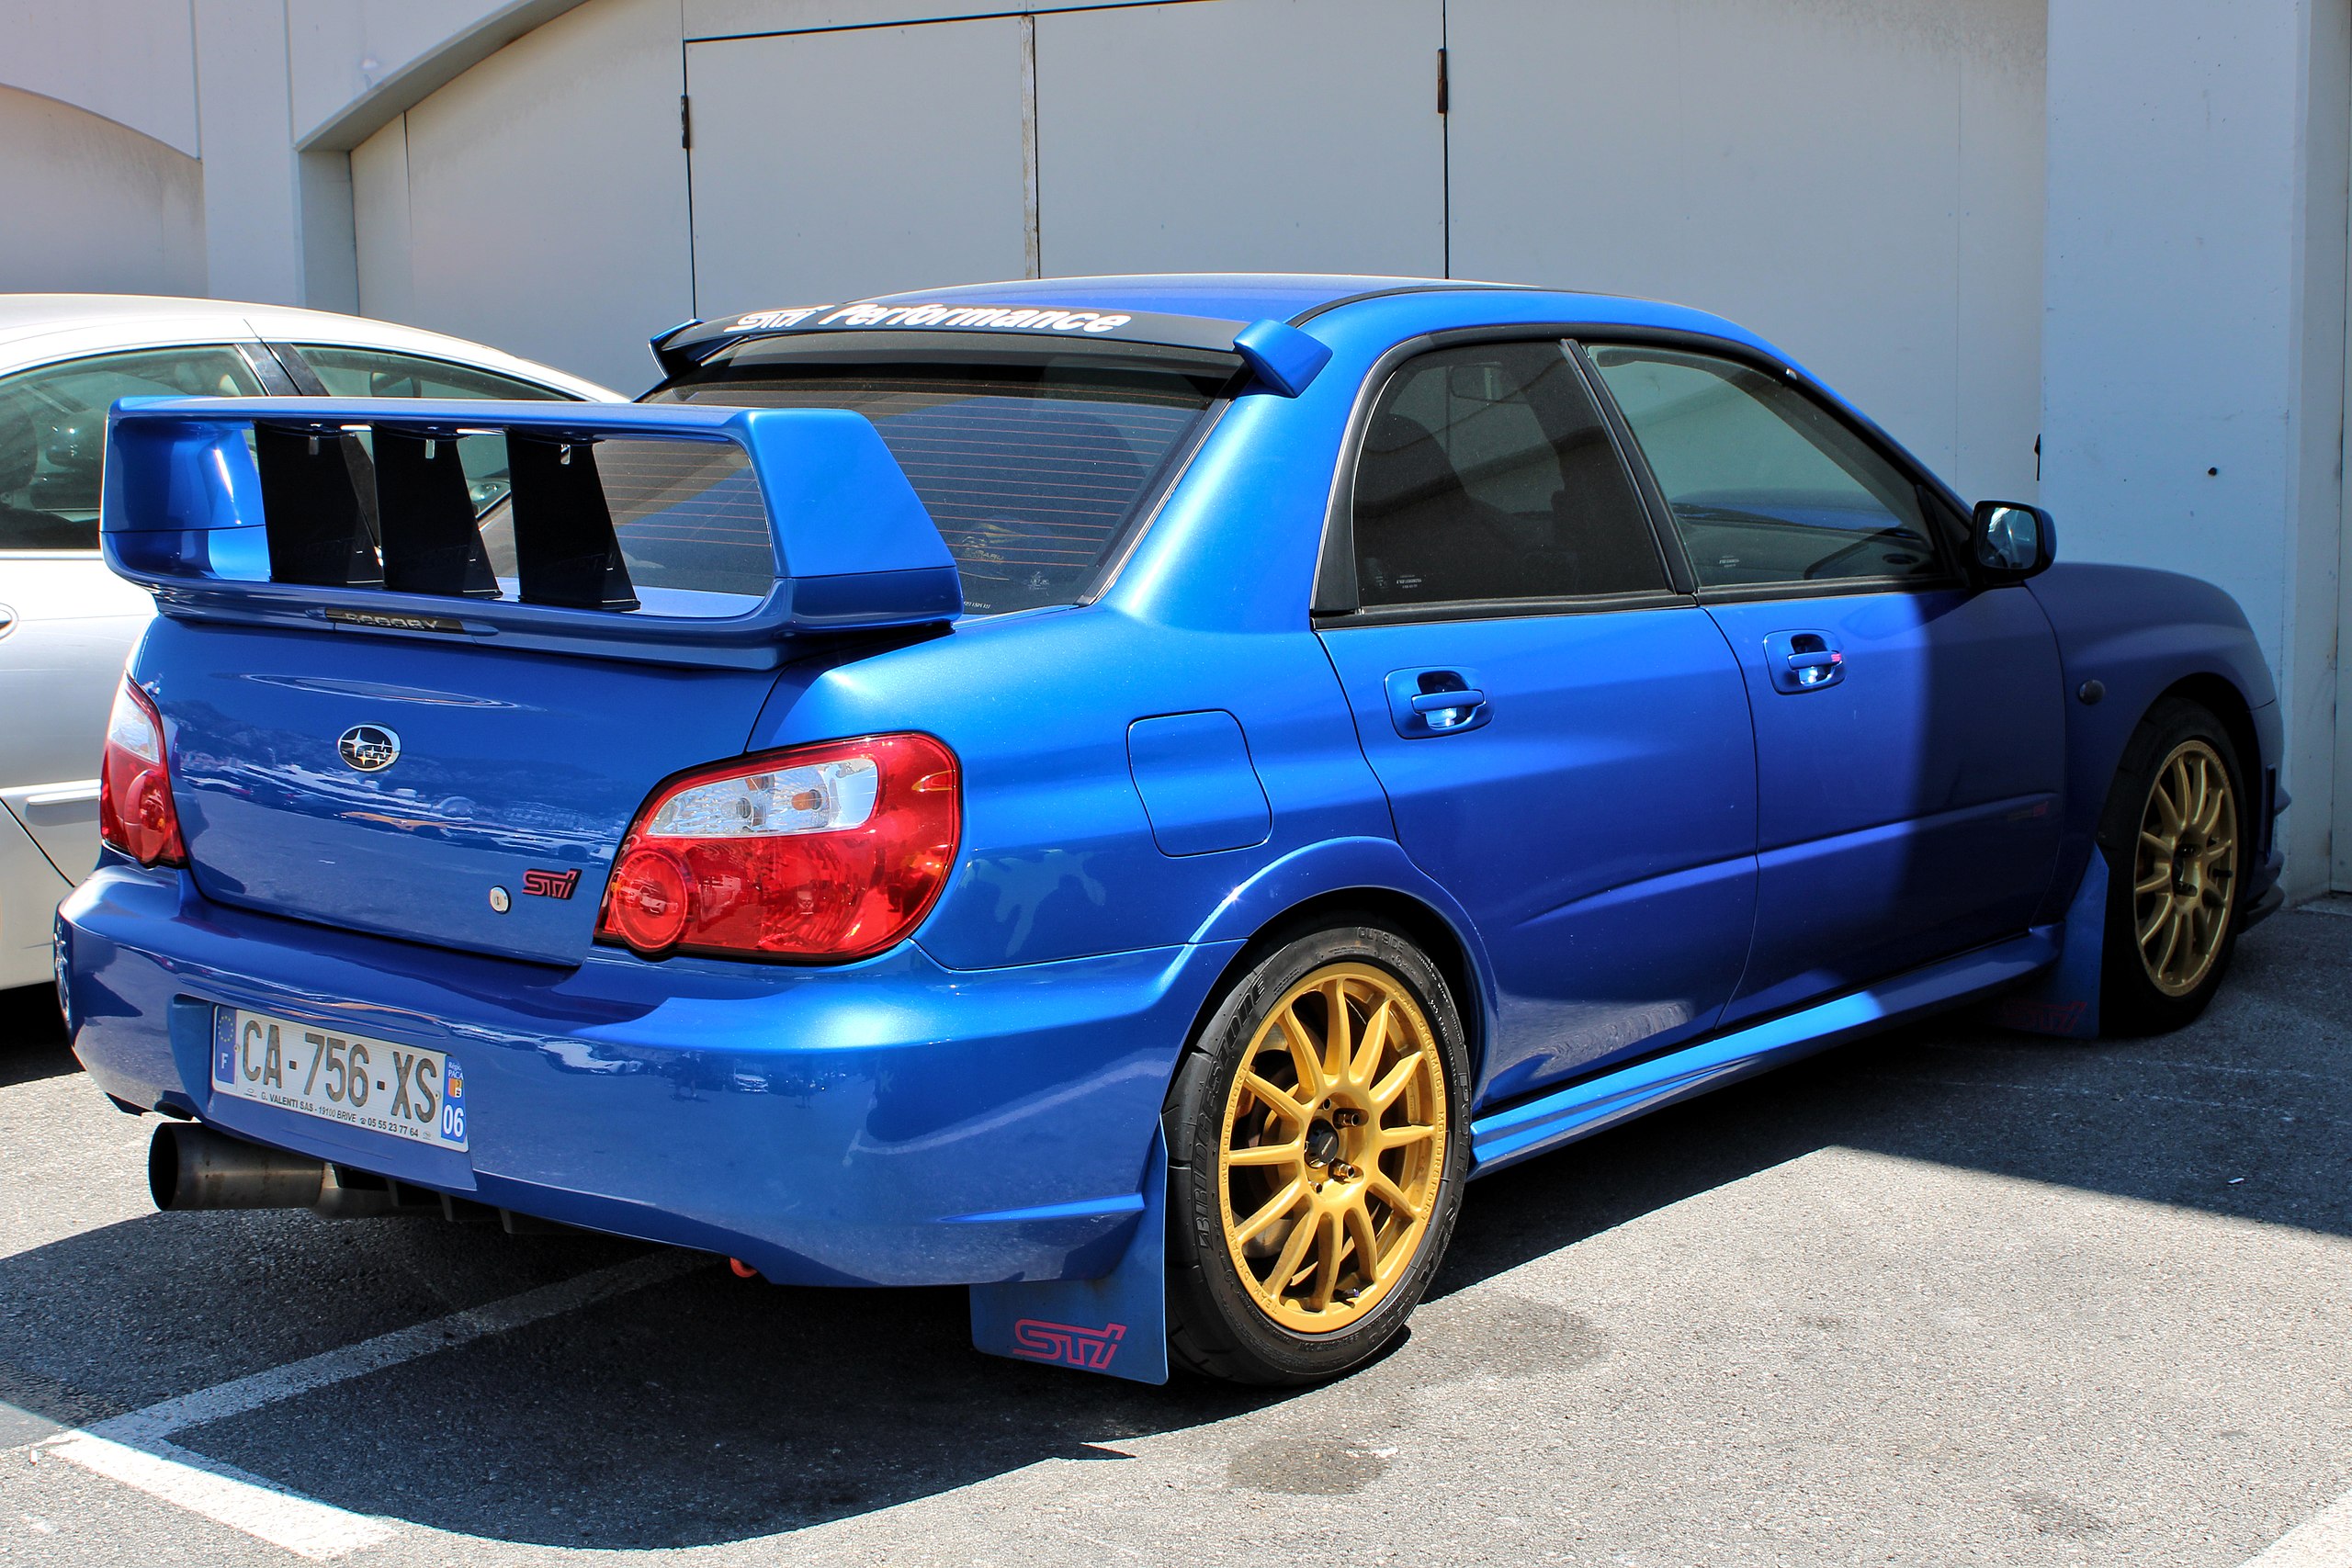 File:Subaru Impreza WRX STI (GD) Monaco IMG 1171.jpg - Wikimedia Commons